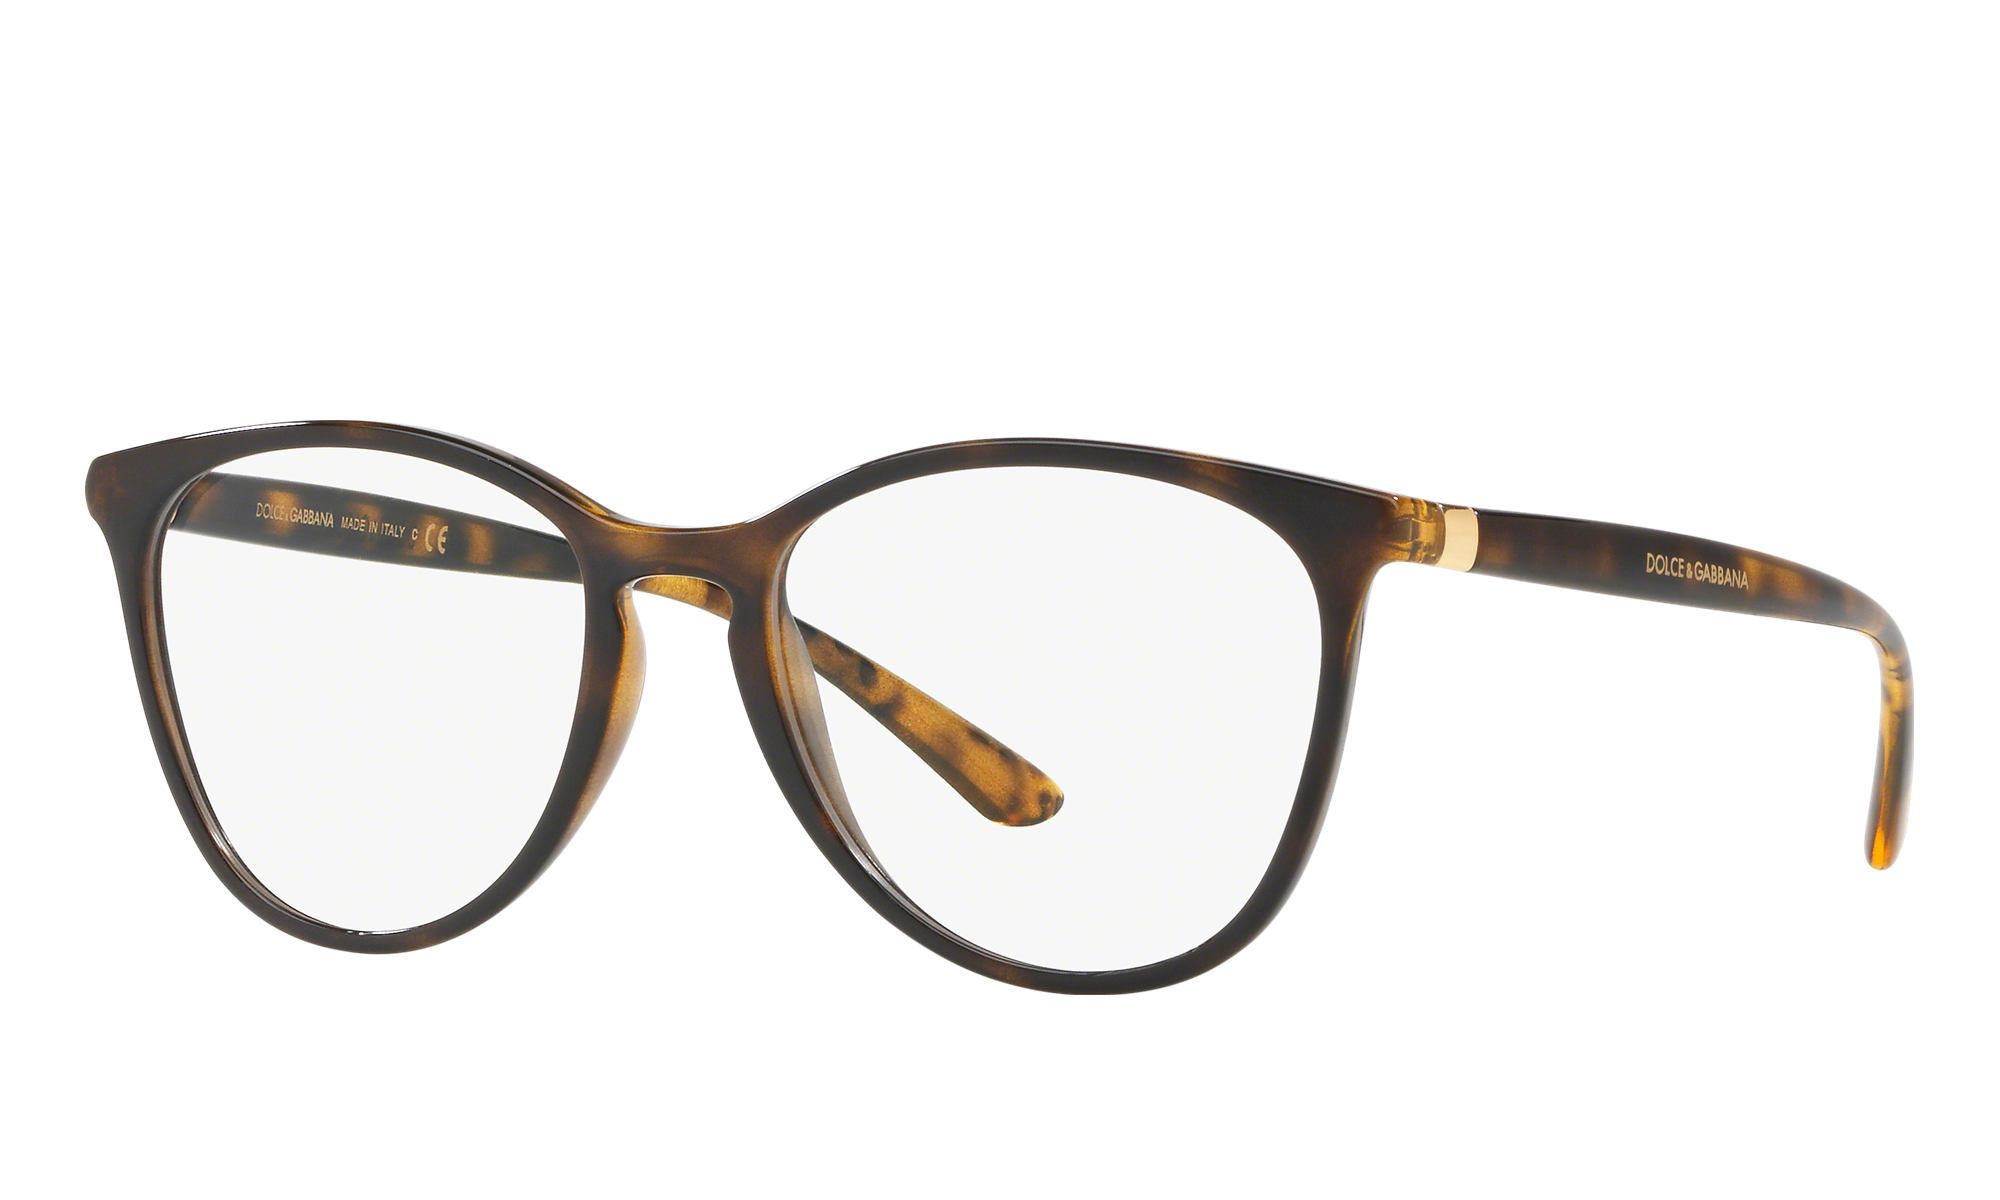 dolce & gabbana women's eyeglass frames